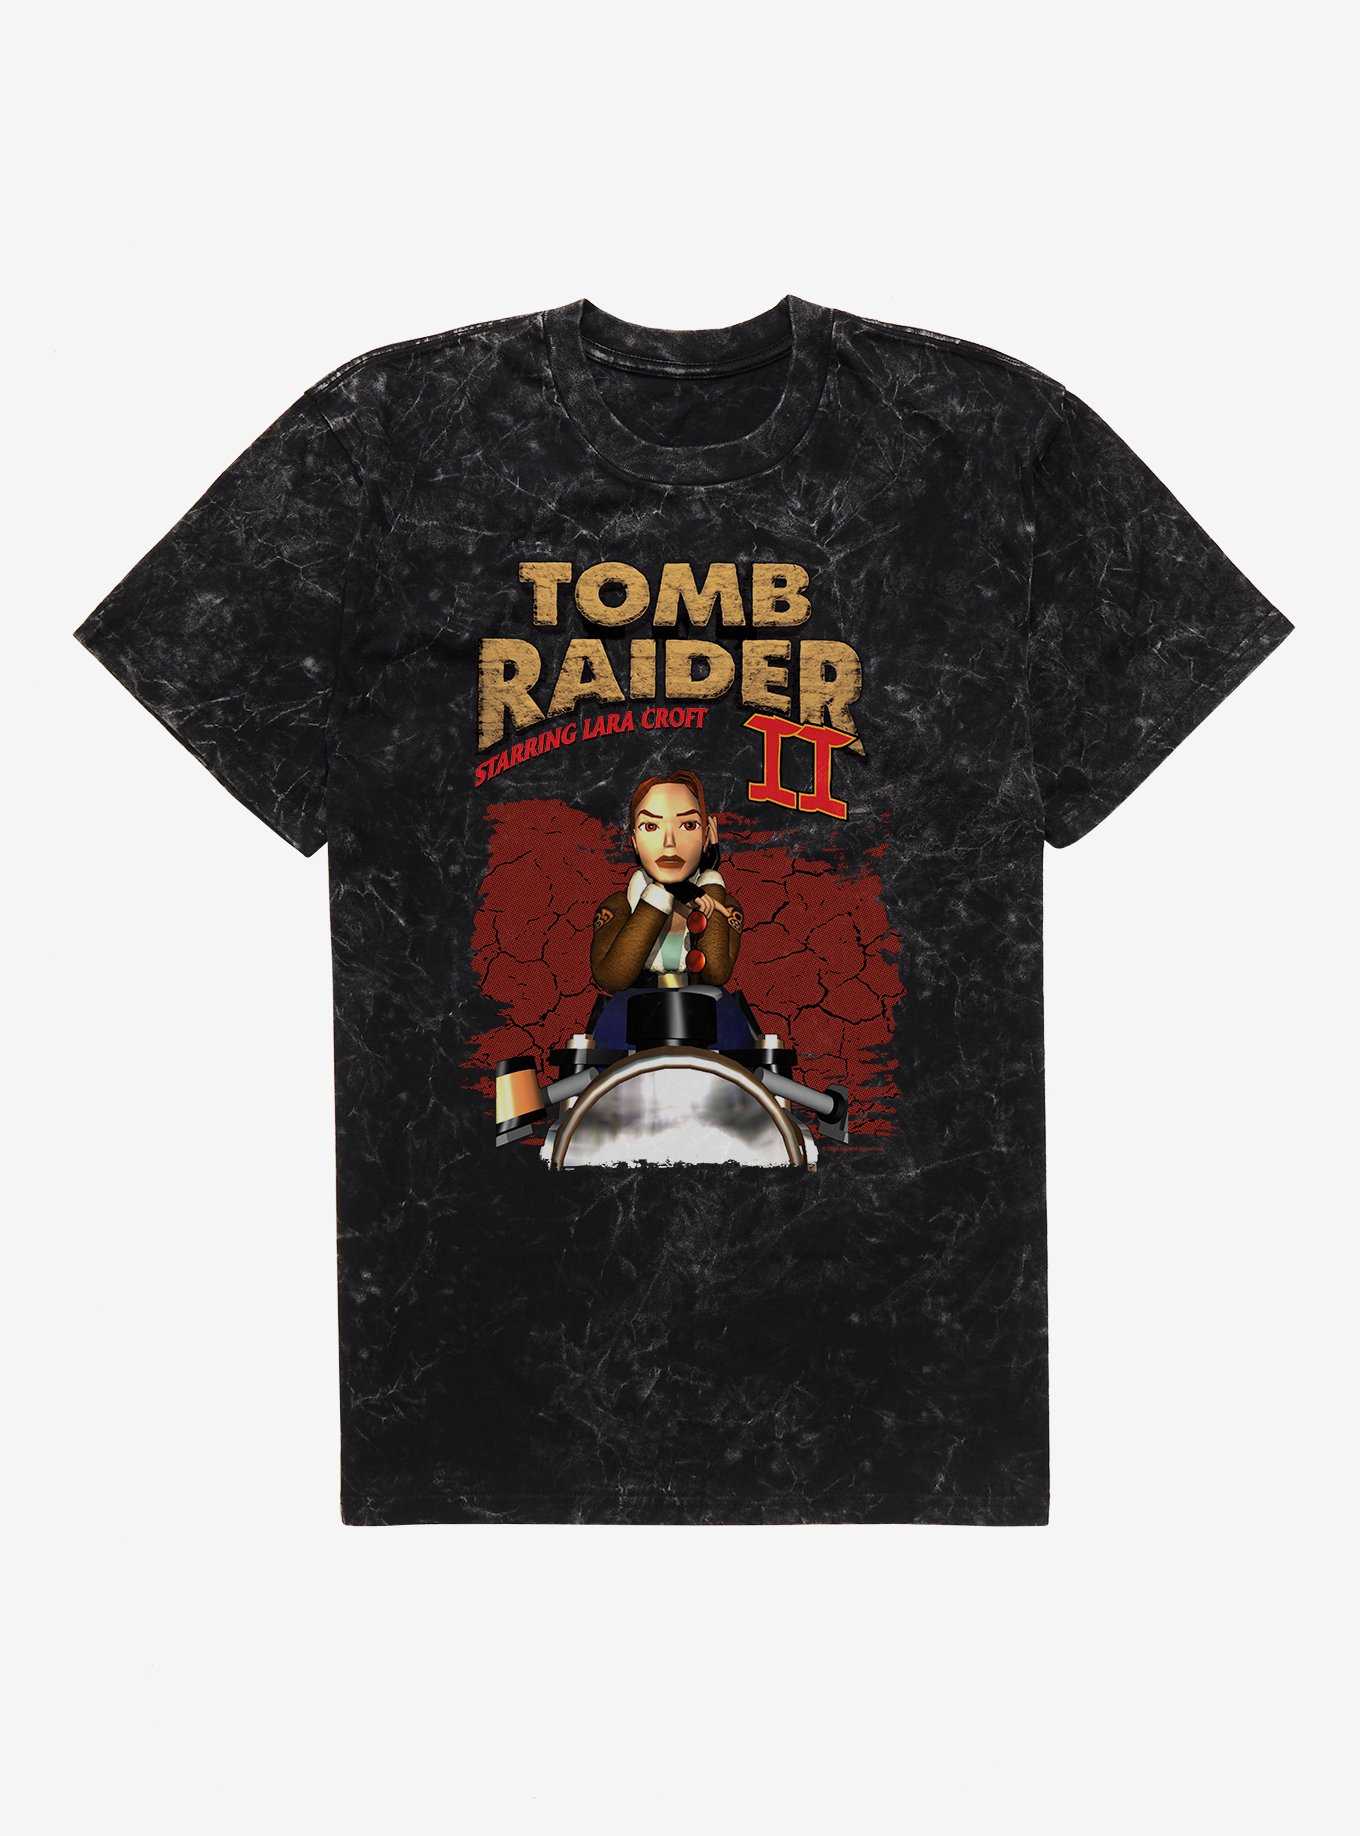 Tomb Raider II Starring Lara Croft Mineral Wash T-Shirt, , hi-res